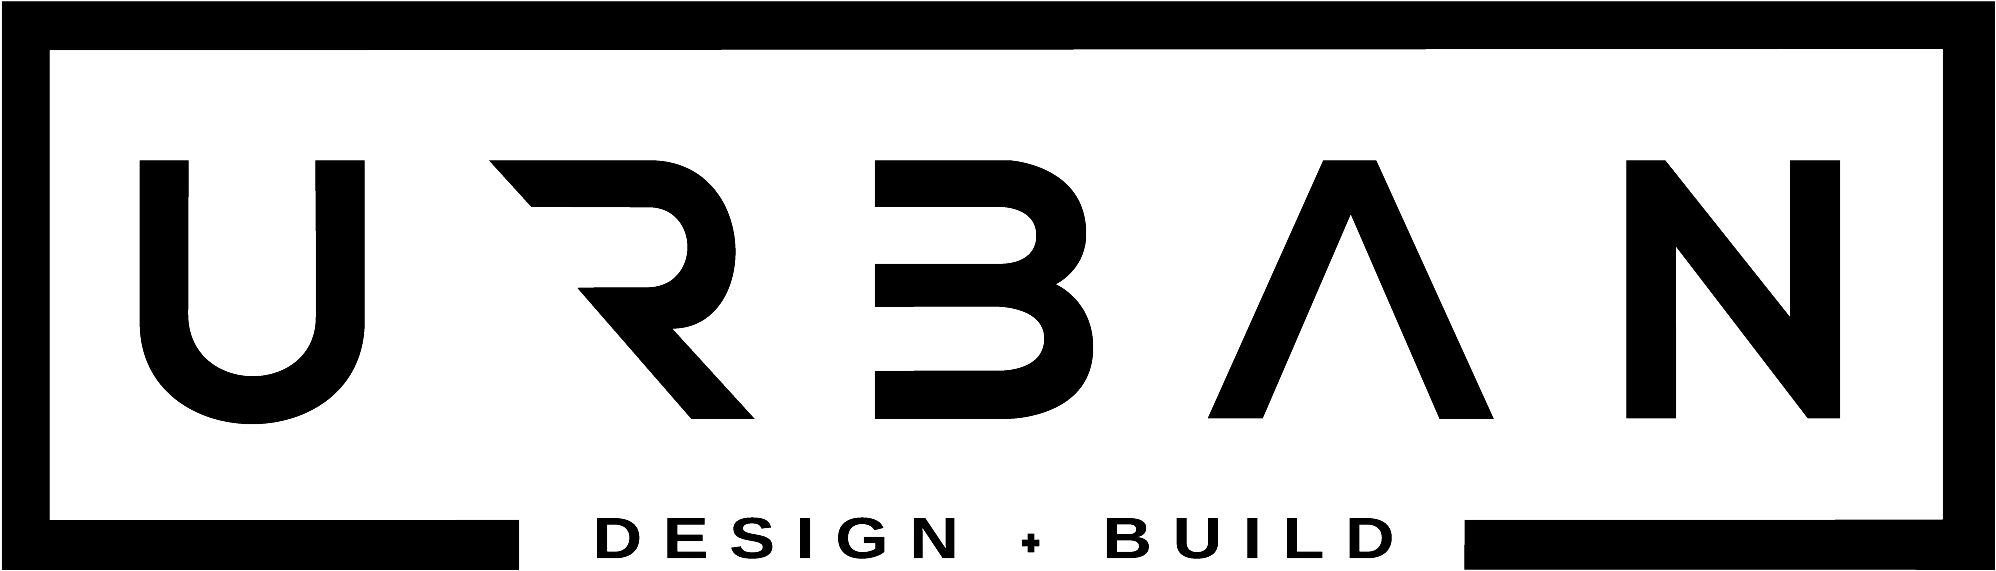 URBAN DESIGN+BUILD – Construction Contractor | Boise, Idaho